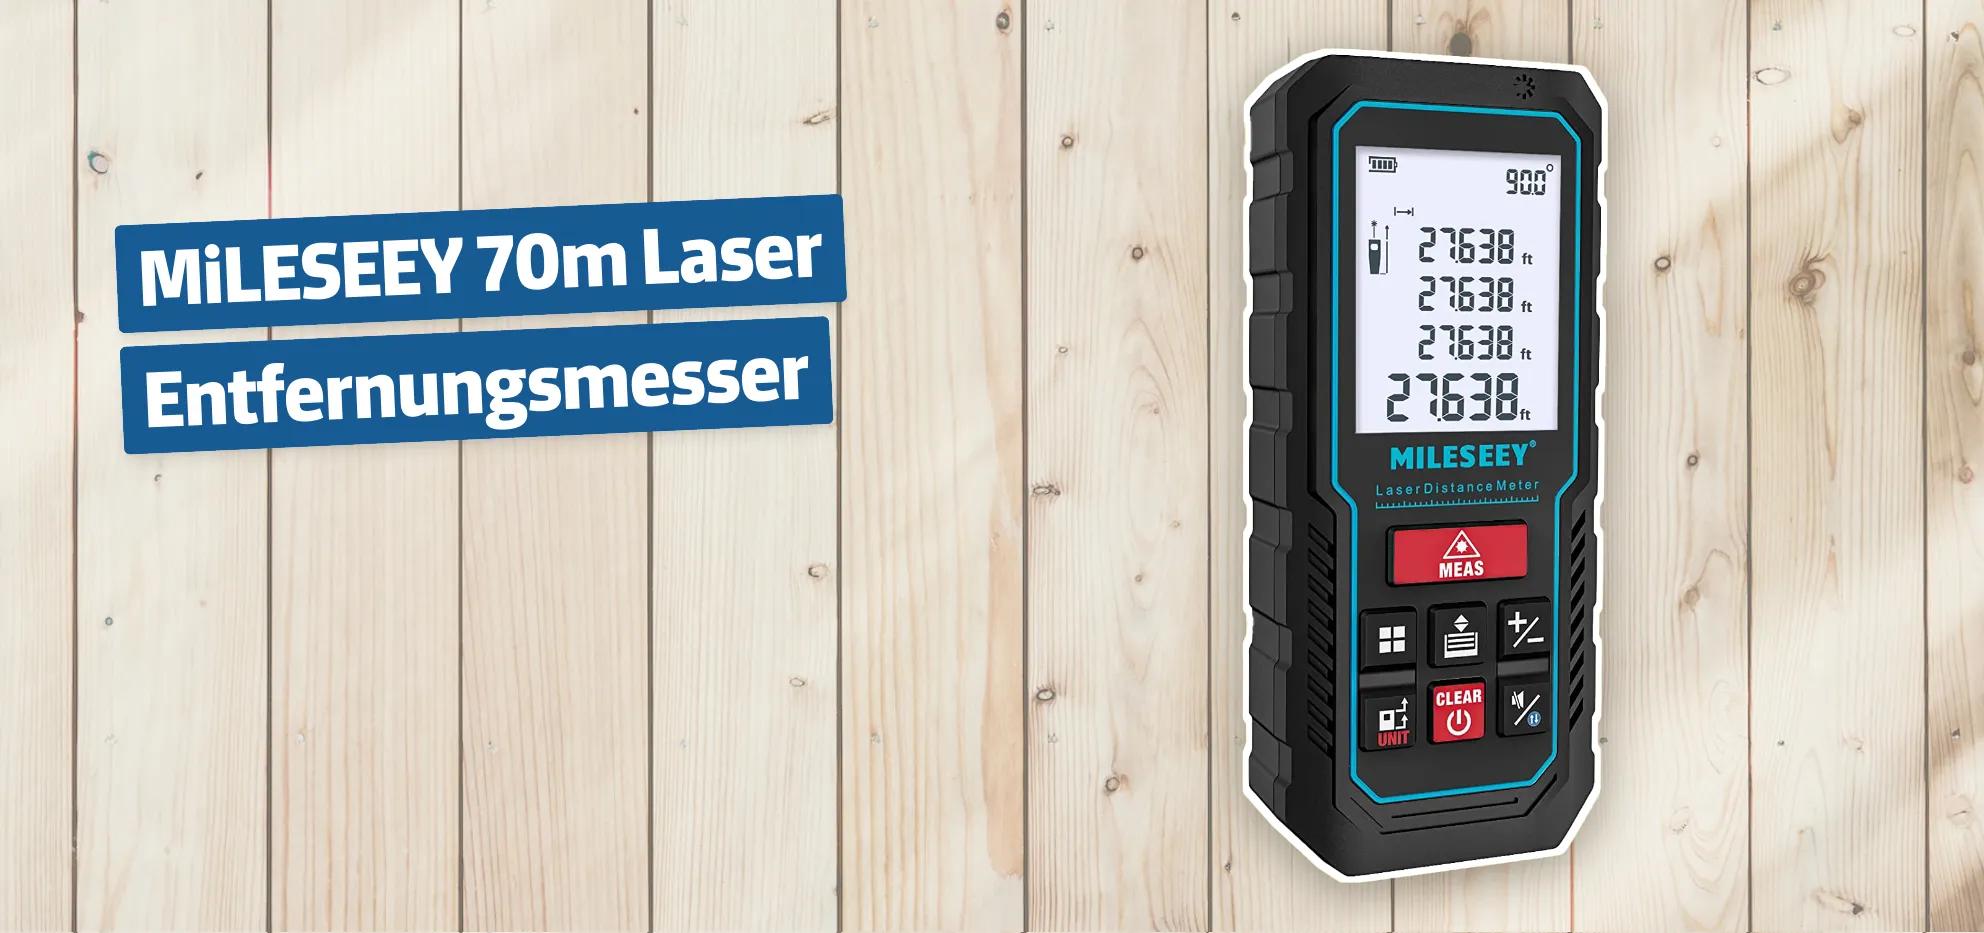 MiLESEEY 70m Laser Entfernungsmesser